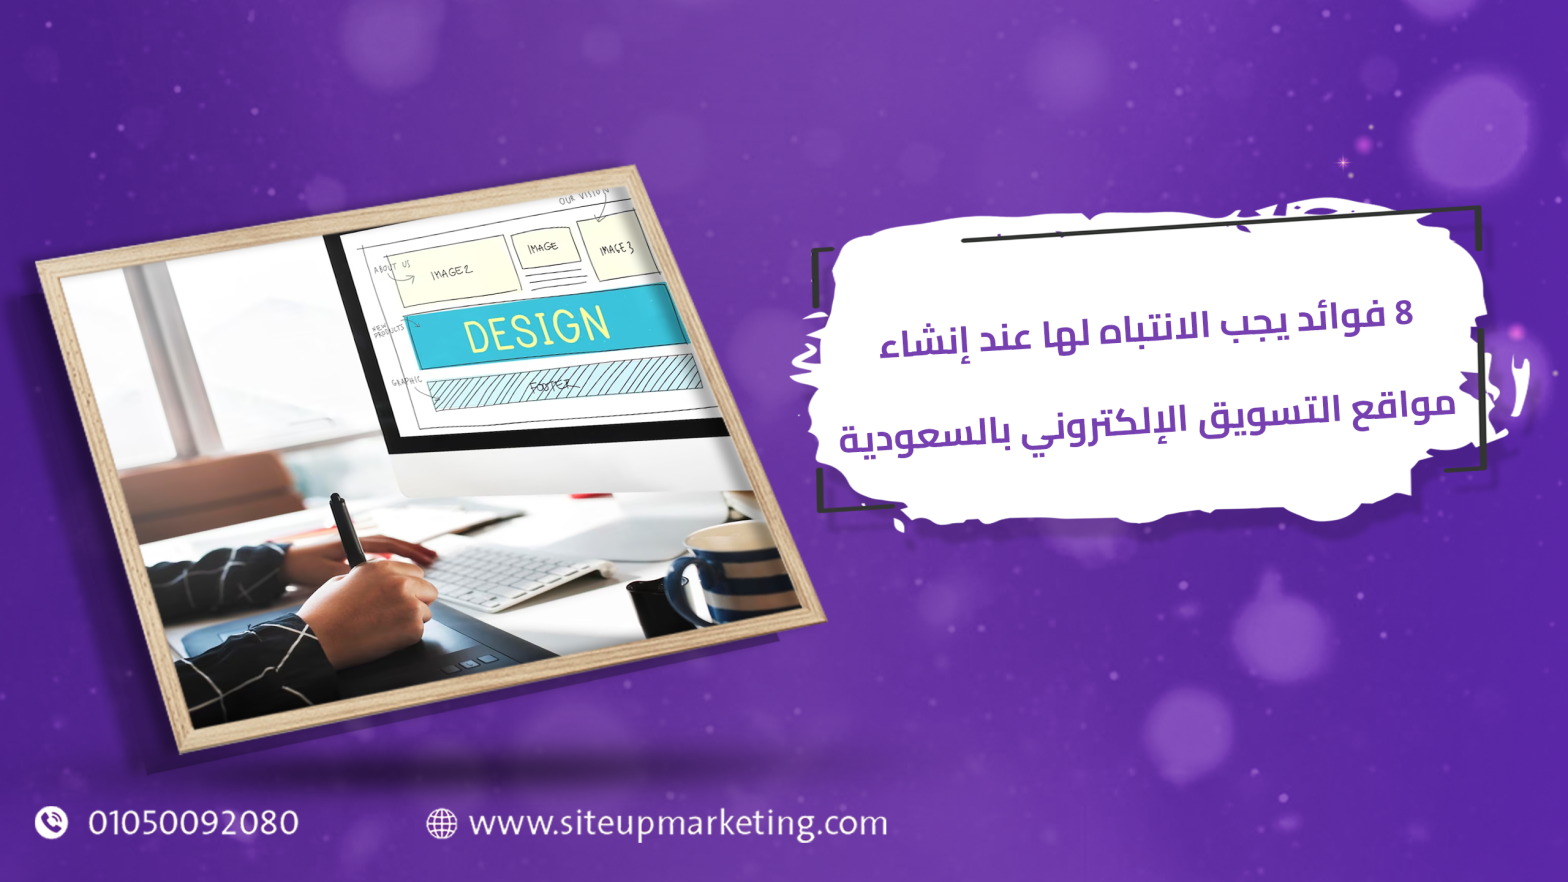 8 فوائد يجب الانتباه لها عند إنشاء مواقع التسويق الإلكتروني بالسعودية